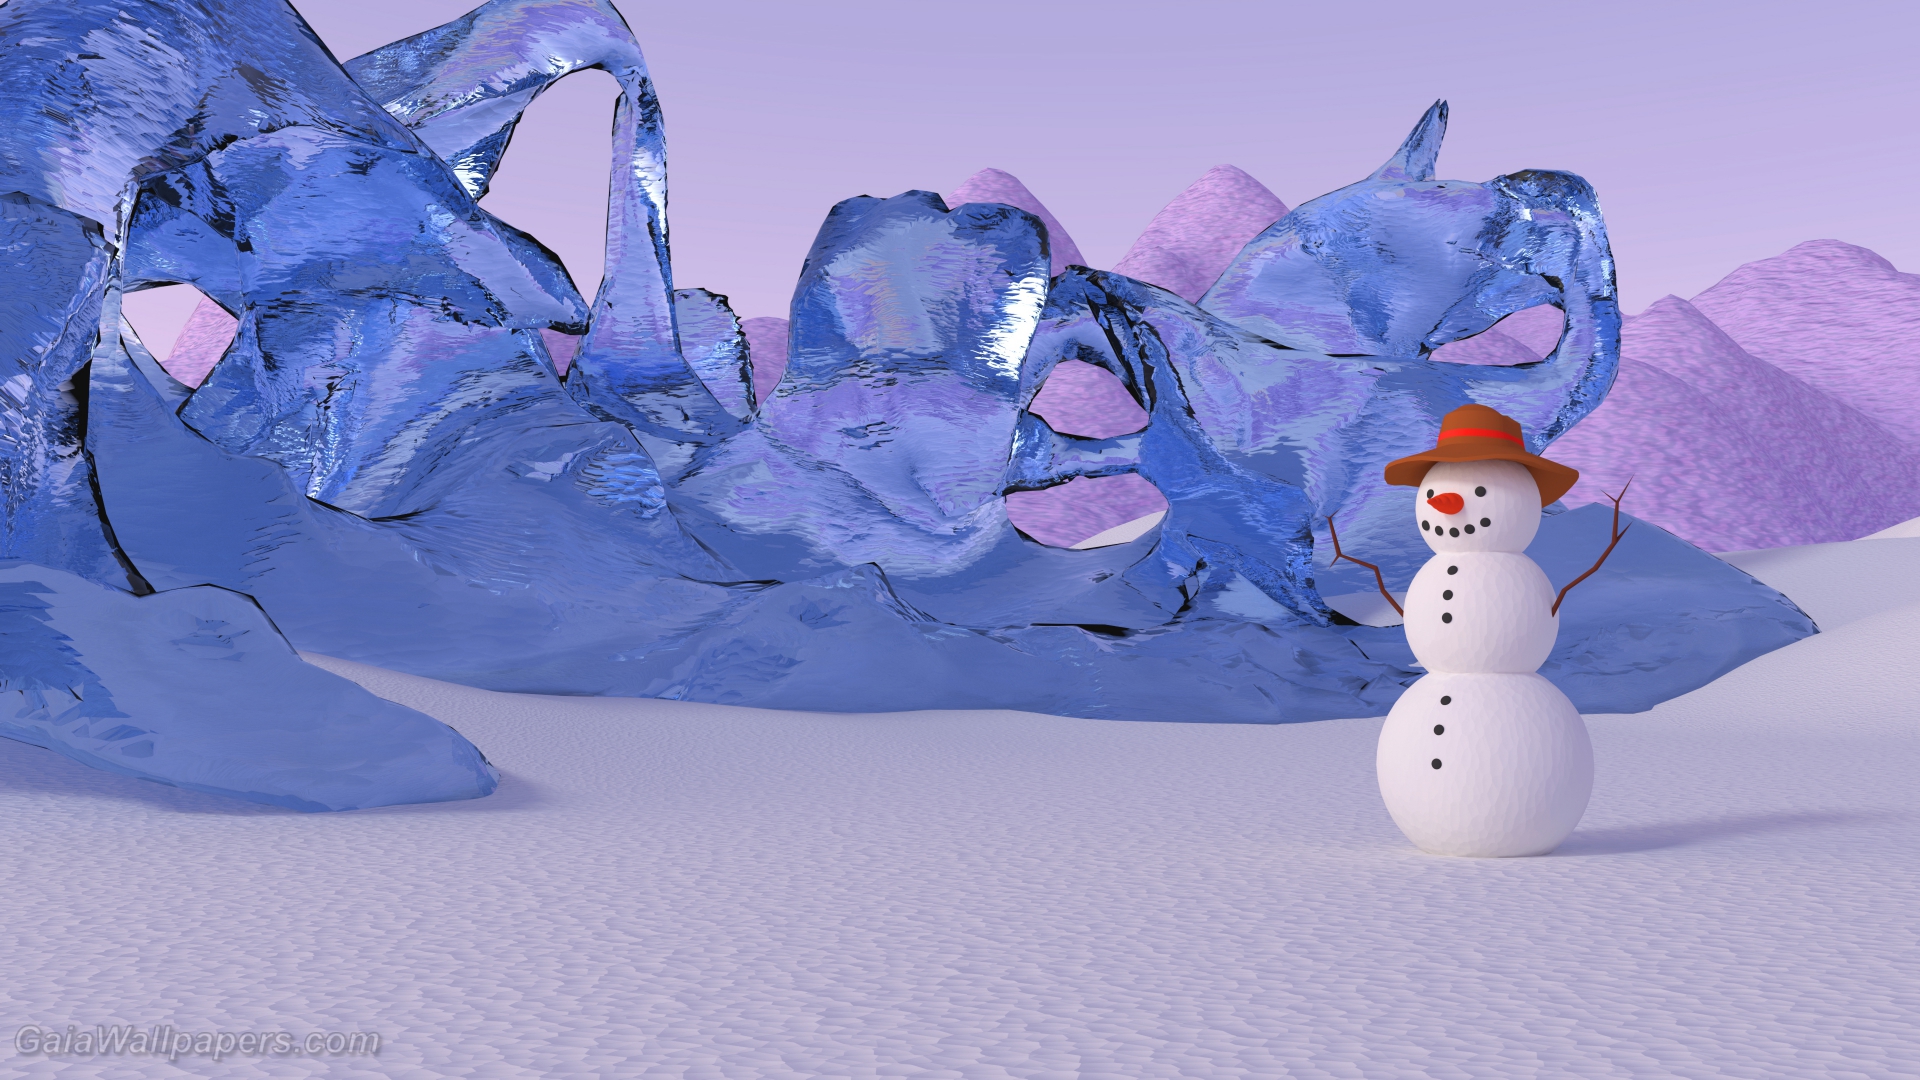 Bonhomme de neige célébrant l'hiver dans son royaume - Fonds d'écran gratuits